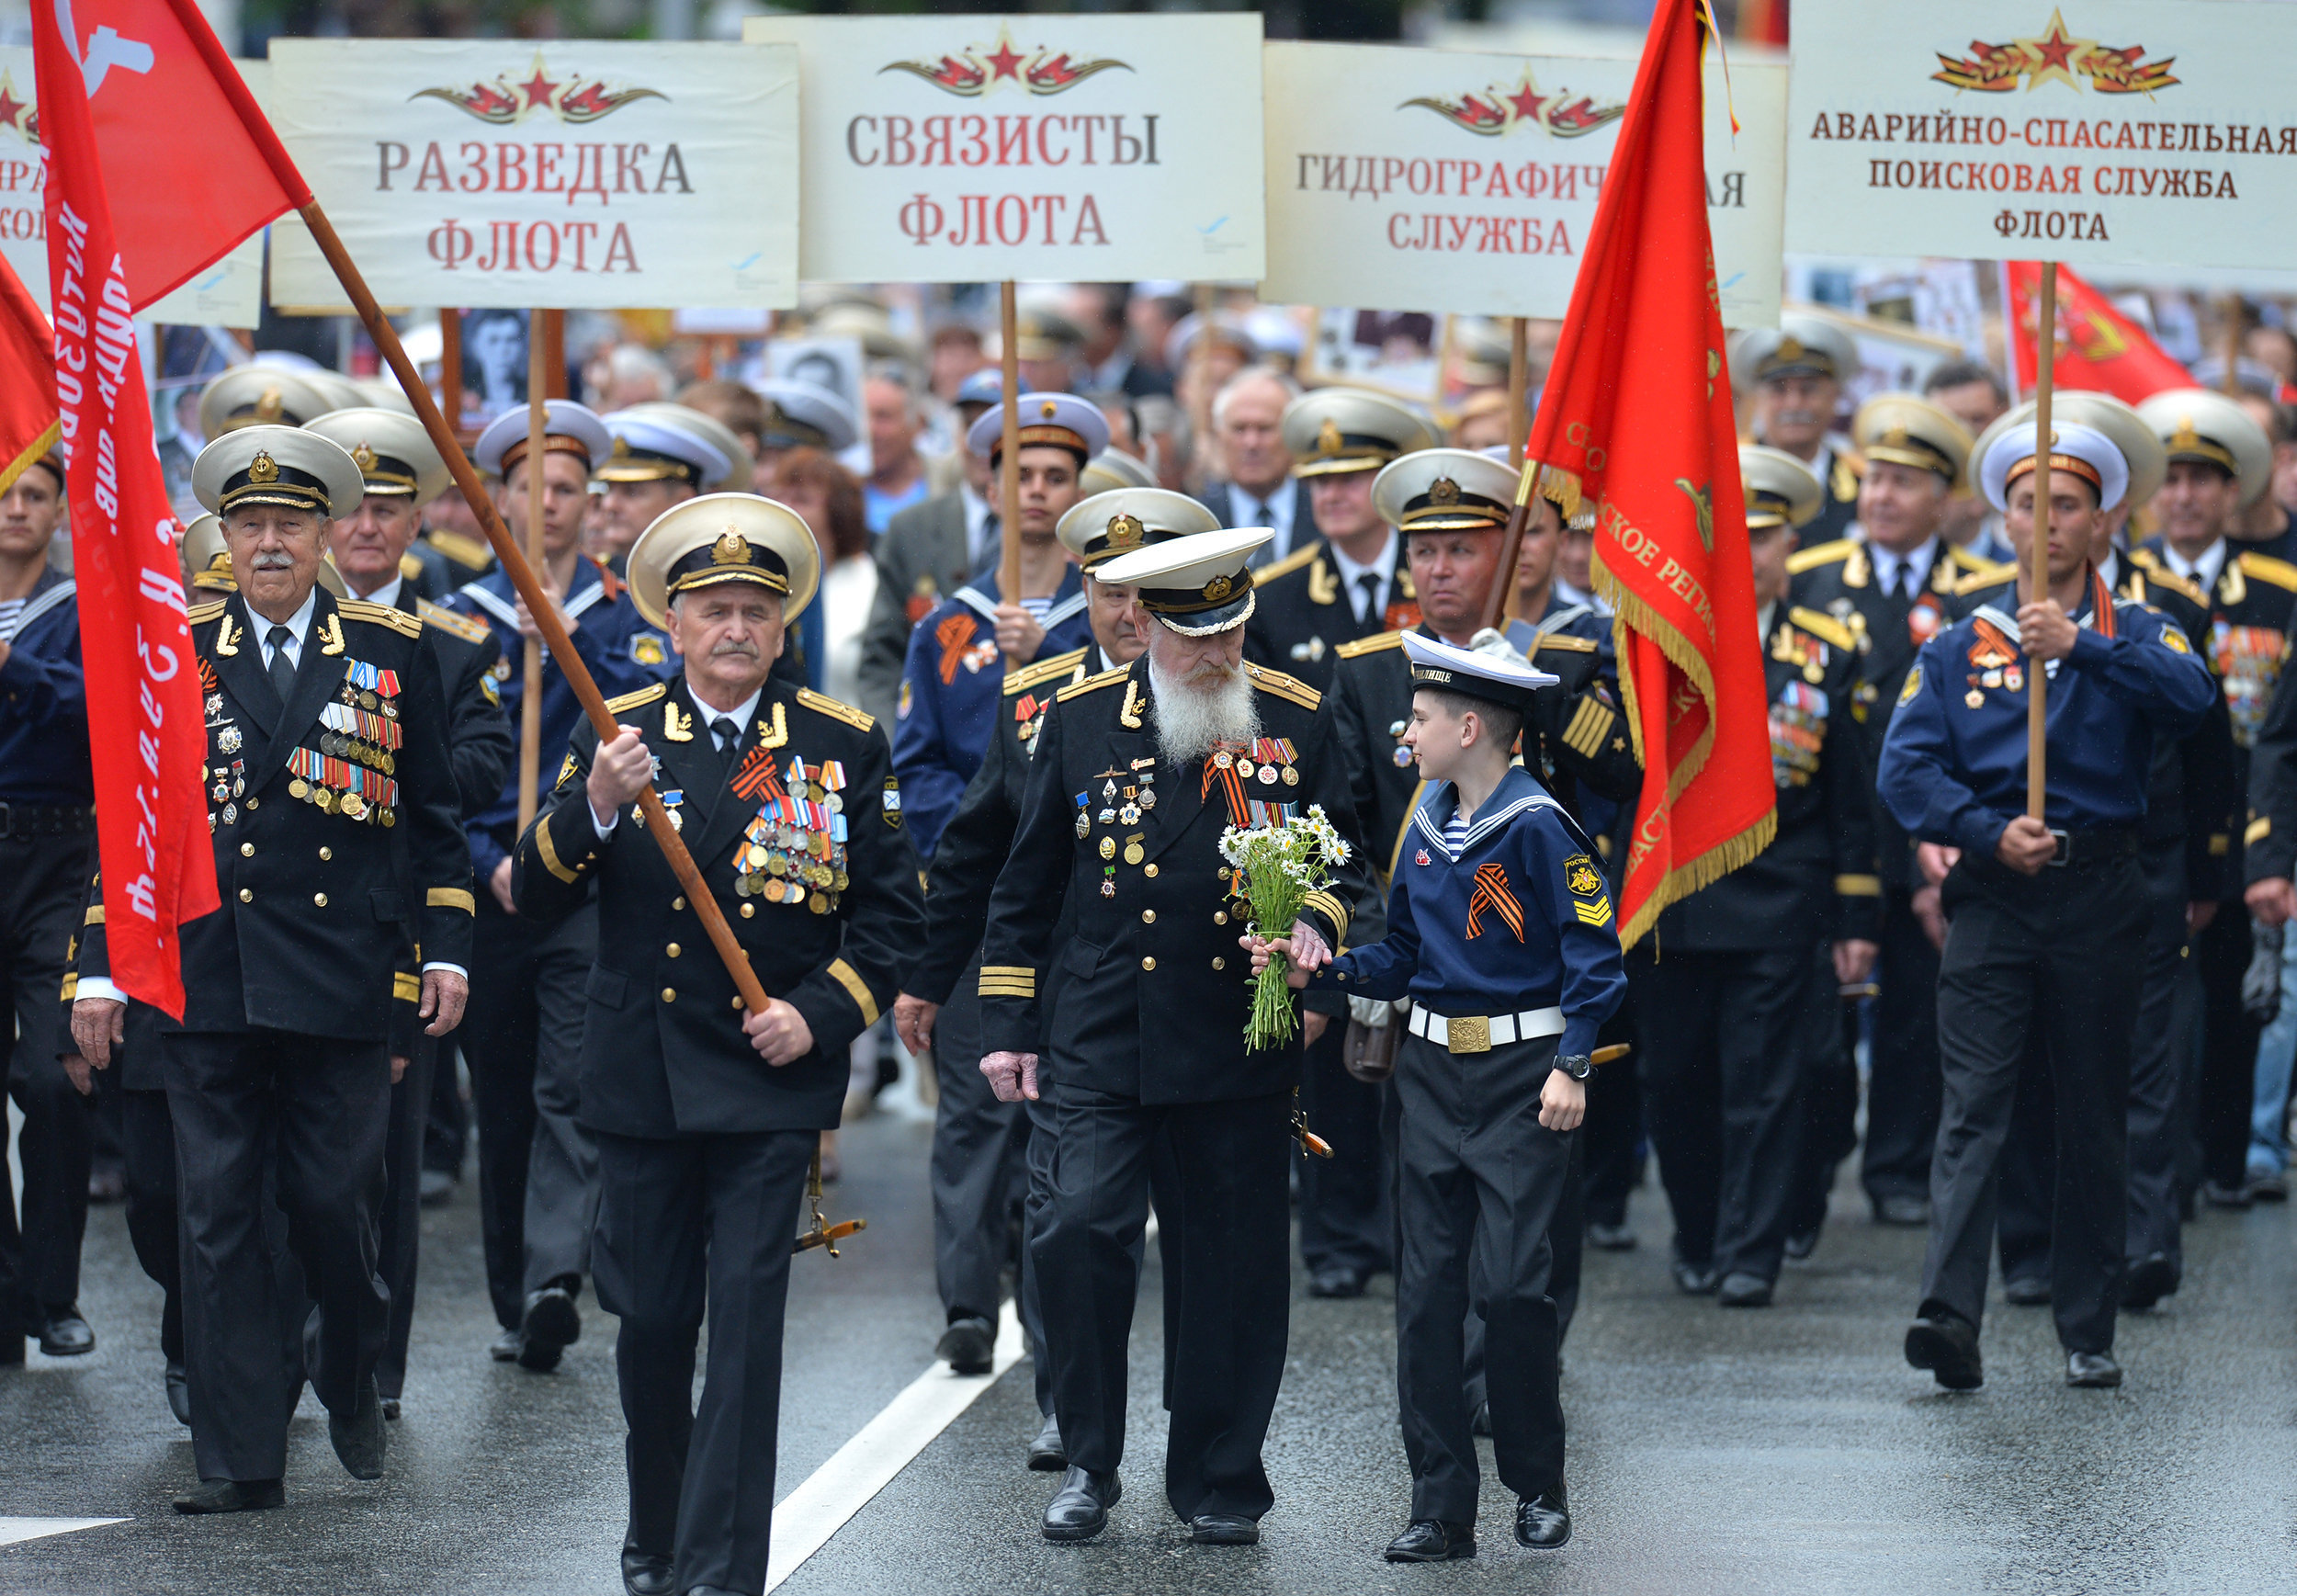 участники военного парада, посвященного 73-й годовщине победы в великой отечественной войне в севастополе 